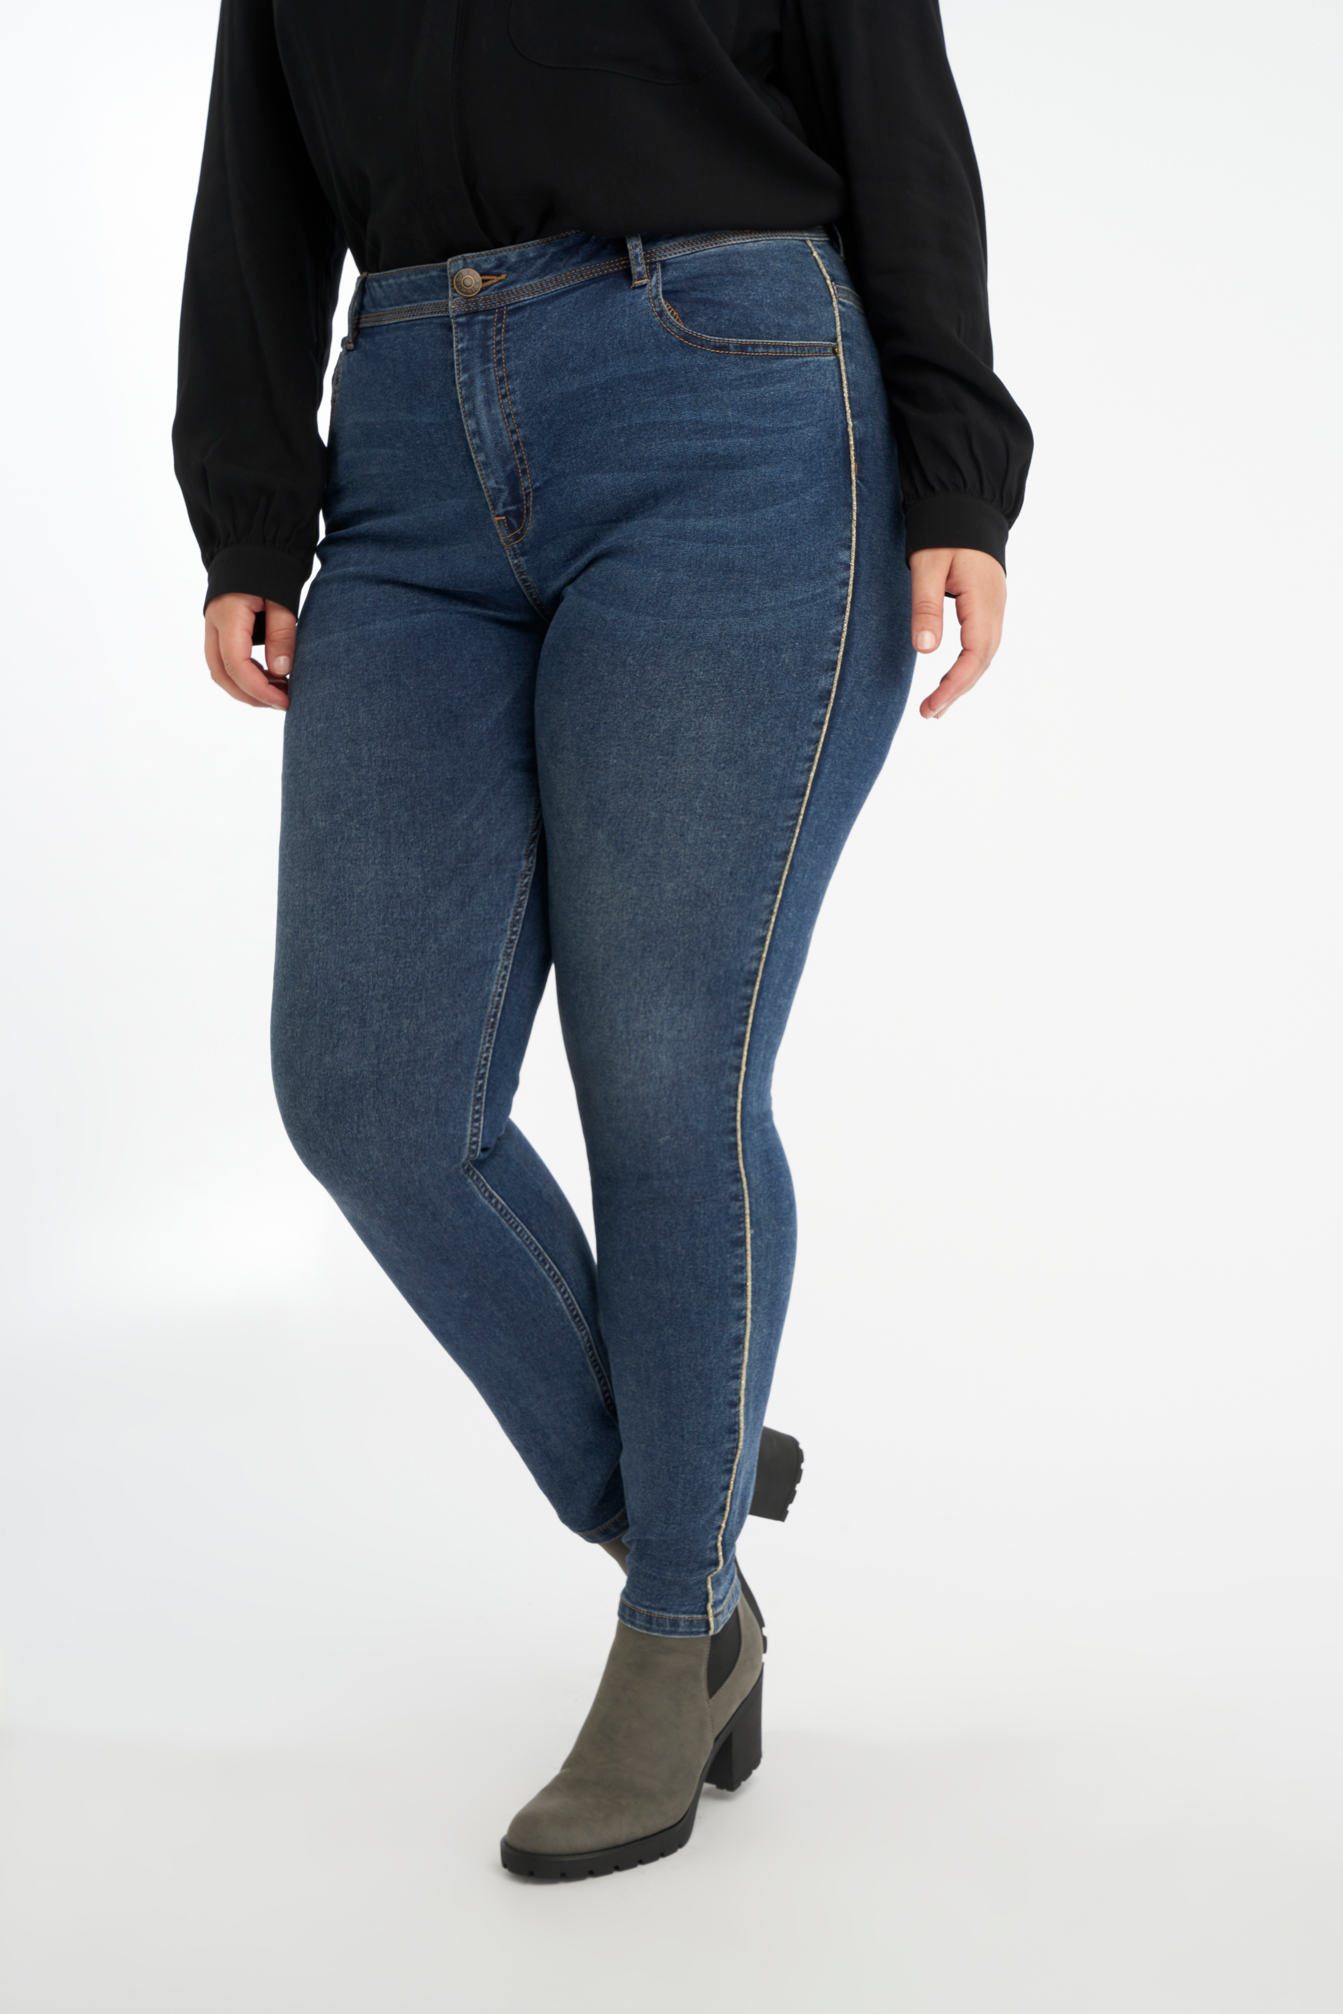 Damen Jeans mit Glitzerstreifen | Official MS Mode® online store